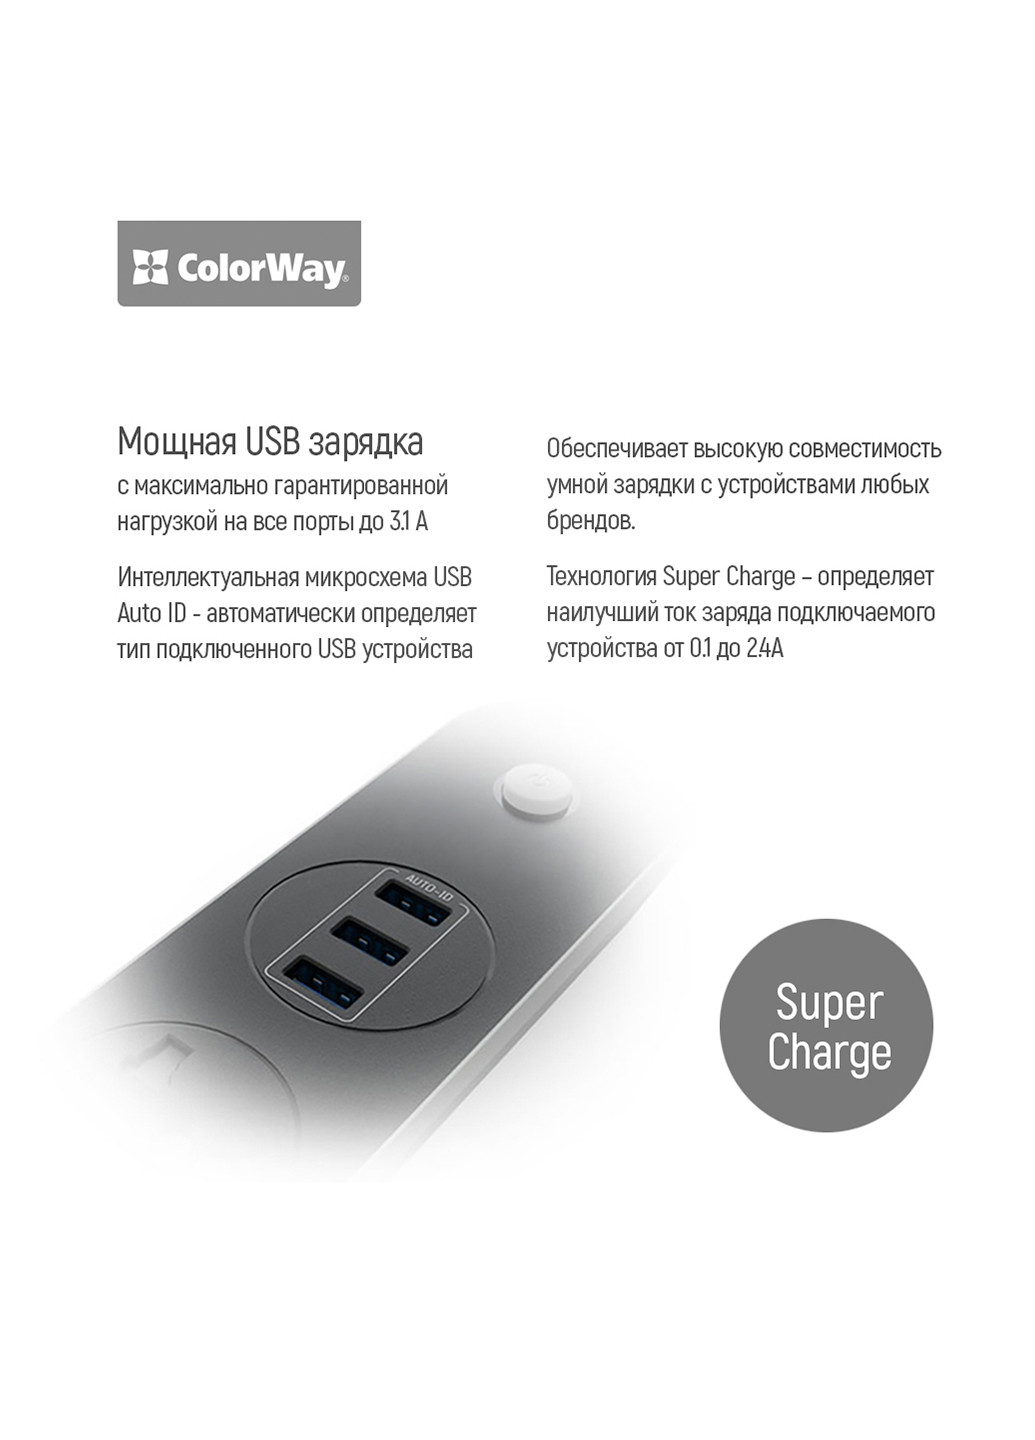 Сетевой фильтр-удлинитель СolorWay Colorway 3 розетки/3usb черный 1.8m (cw-chu33b) (139938735)